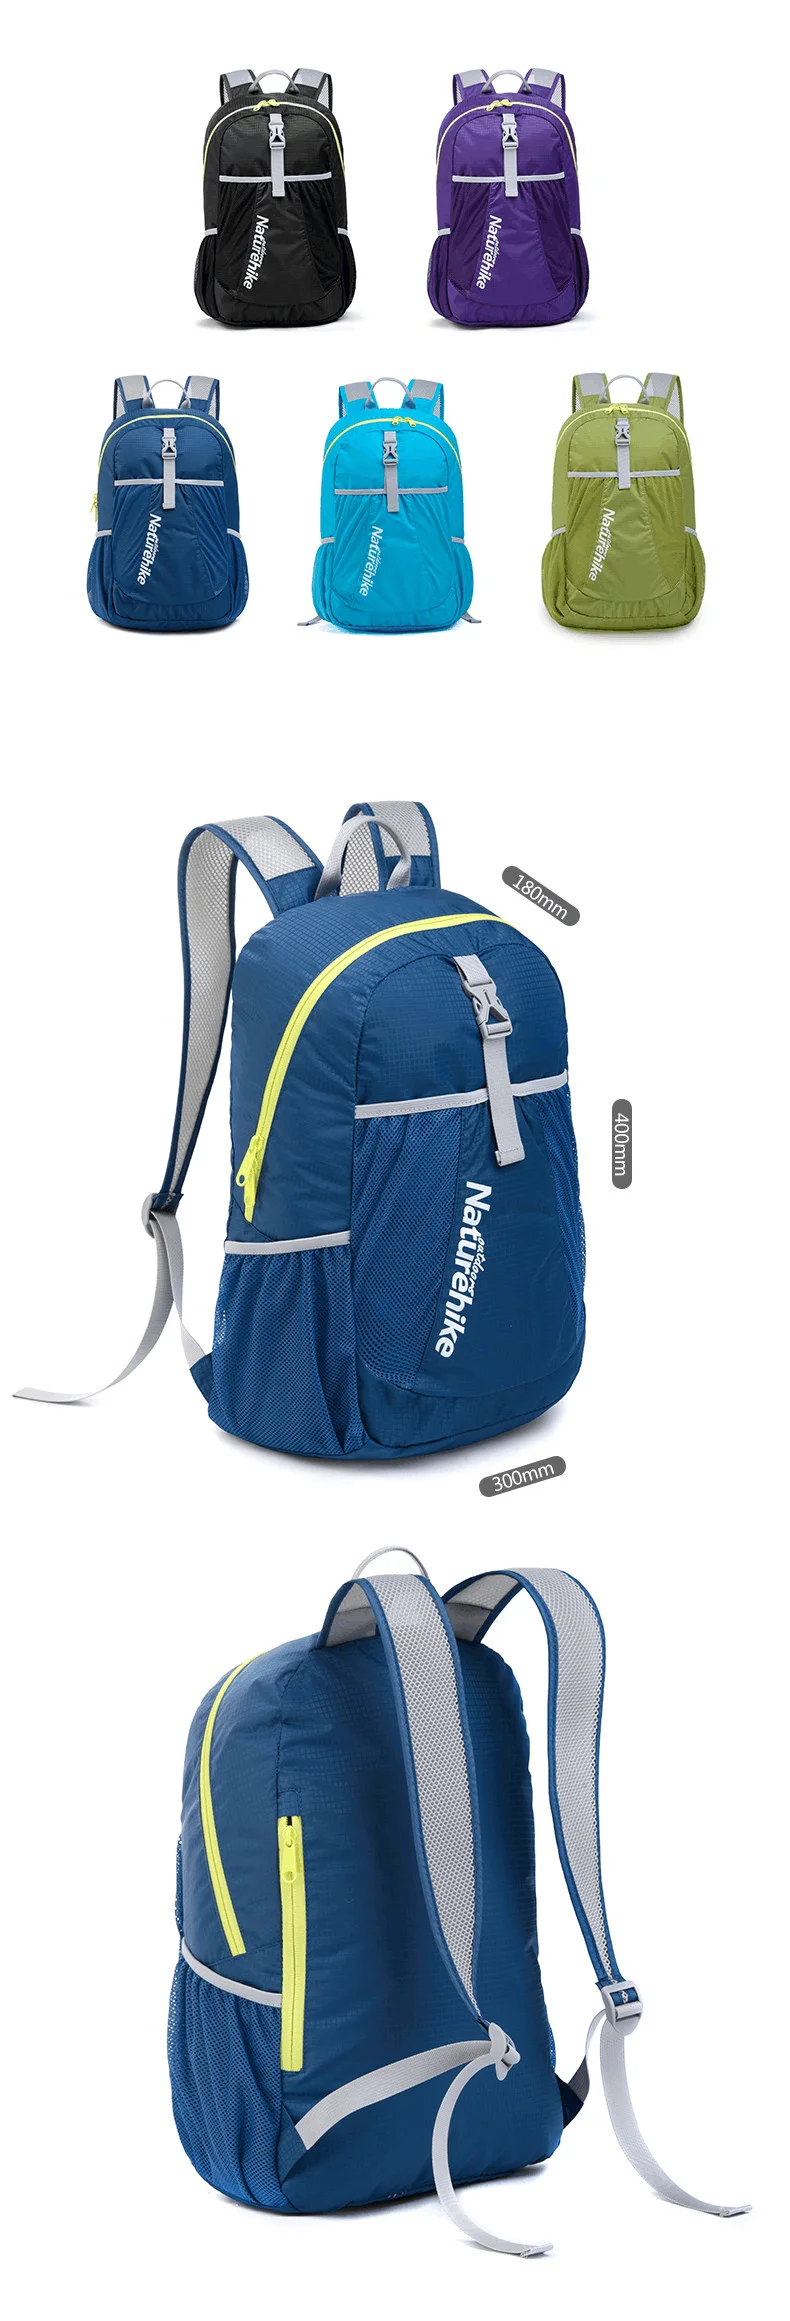 NatureHike ультра легкий складной рюкзак, складной походный рюкзак, дорожная сумка для мужчин и женщин, уличная удобная сумка для переноски 22л 190 г